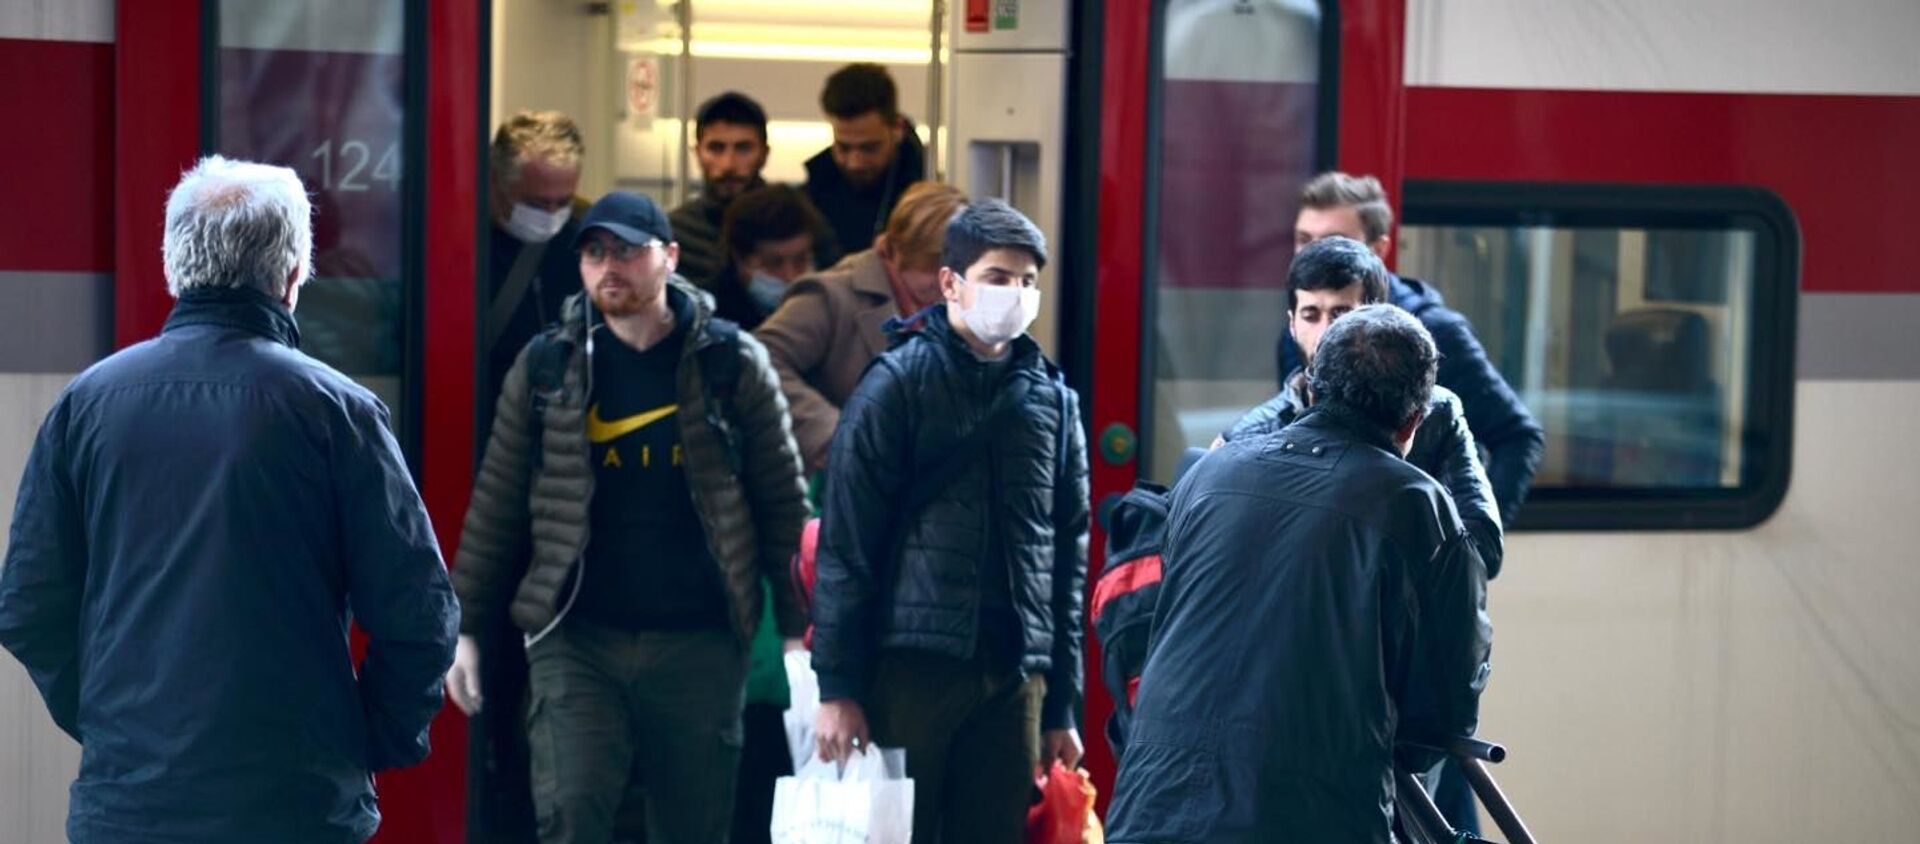 Люди в масках выходят из пассажирского поезда Stadler. В Грузии пытаются остановить распространение коронавируса - Sputnik Грузия, 1920, 26.02.2021